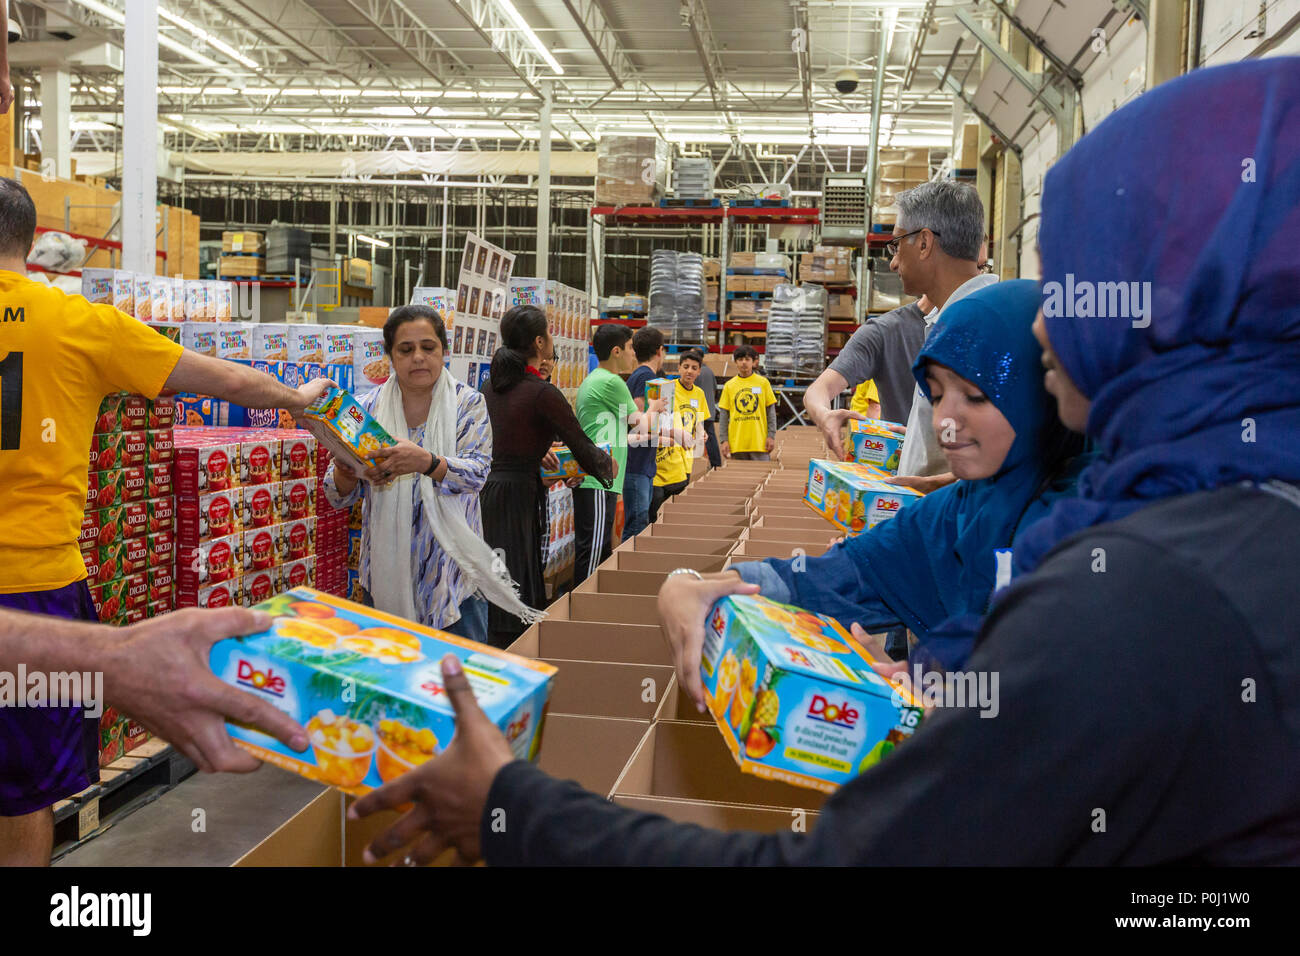 Novi, Michigan USA - 9 juin 2018 - Les bénévoles musulmans boîtes alimentaires forfait pour les plus démunis de la région de Detroit durant le mois de Ramadan. Les musulmans sont susceptibles de contribuer à des activités de bienfaisance au cours du mois. Crédit : Jim West/Alamy Live News Banque D'Images